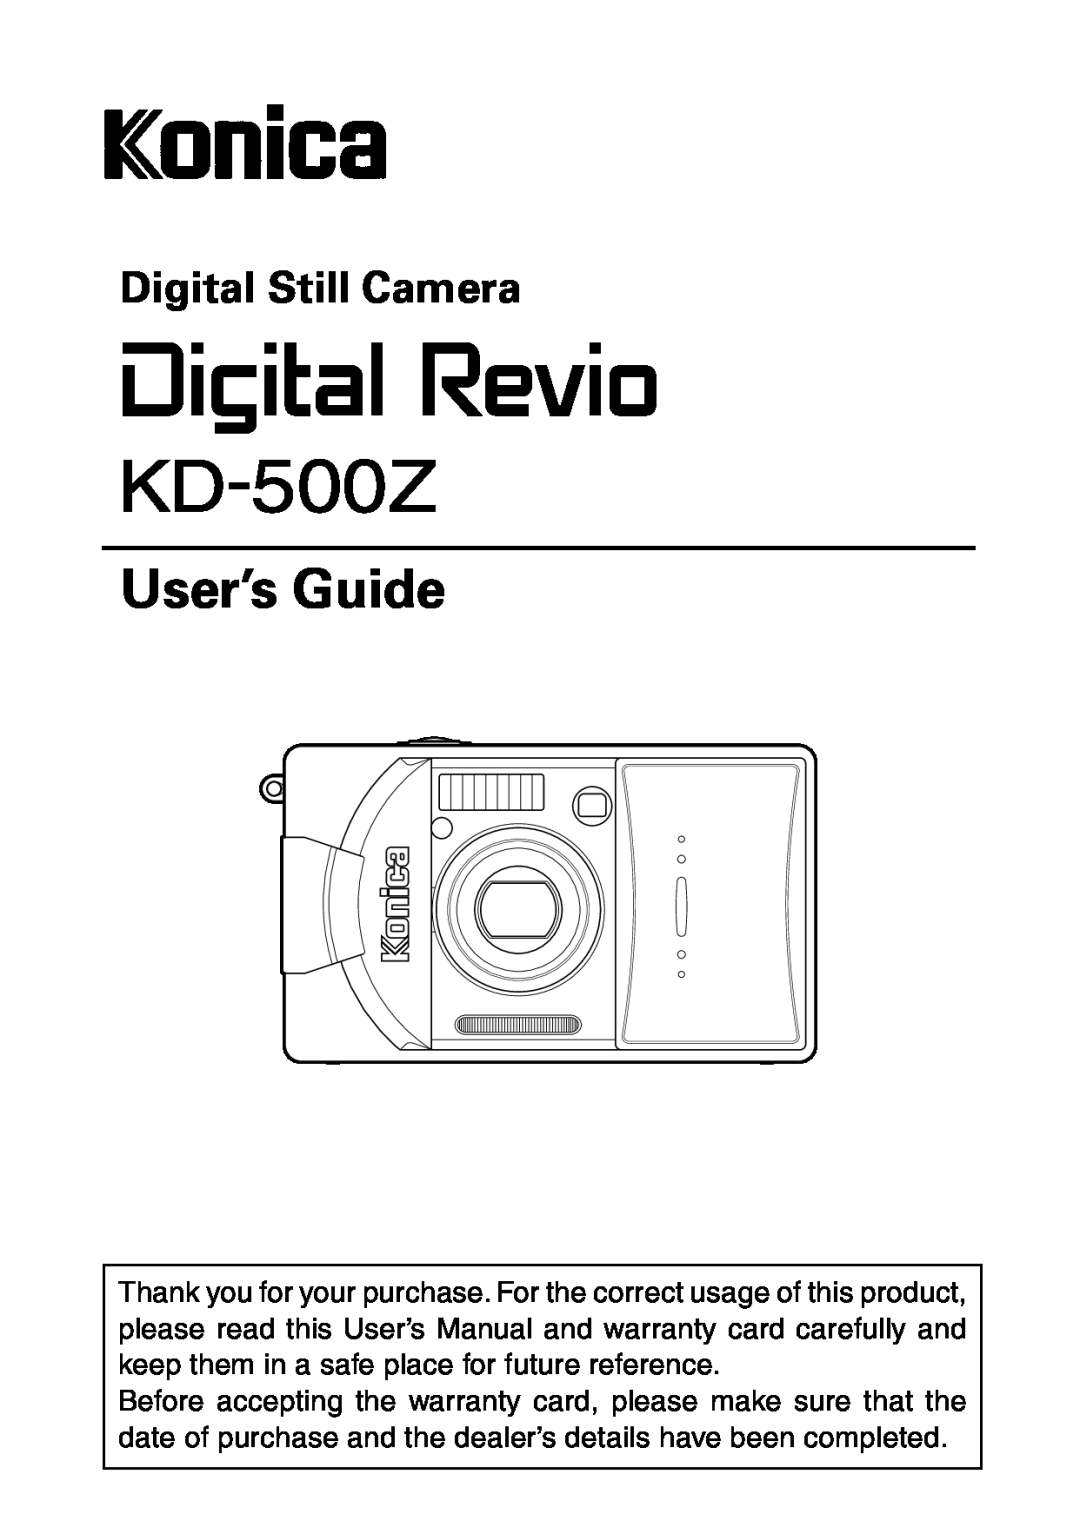 Konica Minolta KD-500Z user manual User’s Guide, Digital Still Camera 